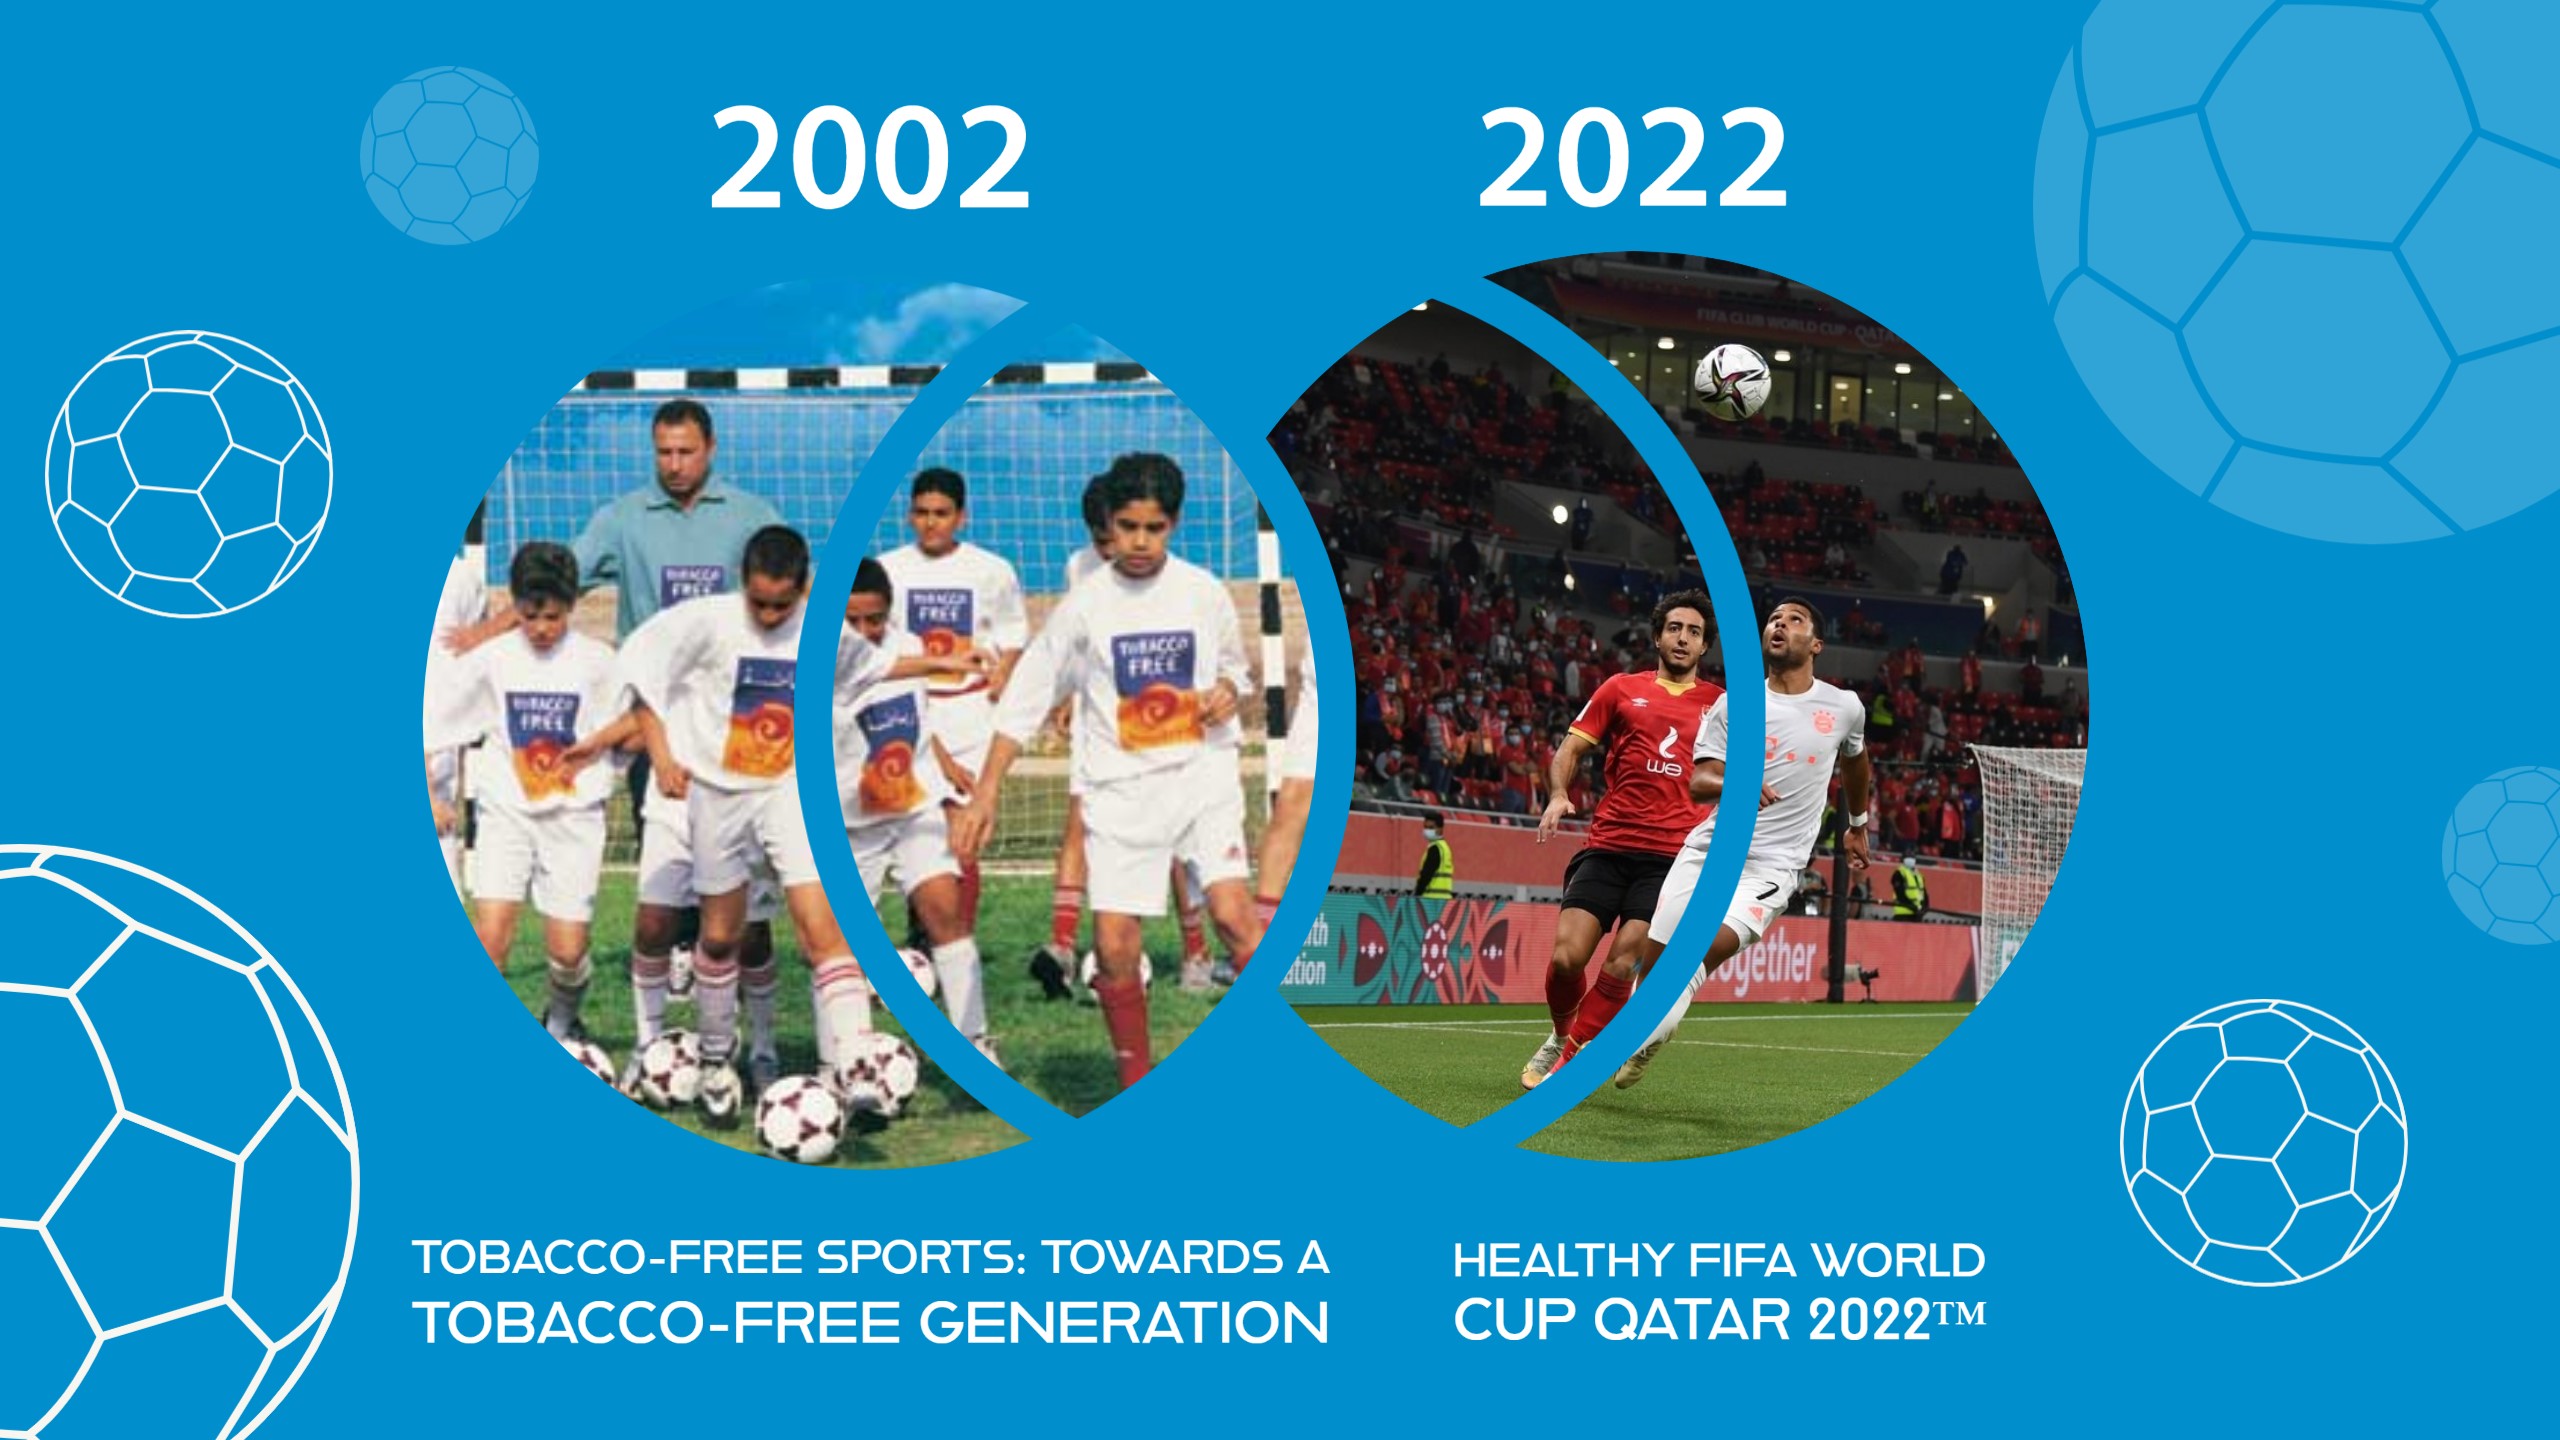 Healthy FIFA World Cup Qatar 2022™